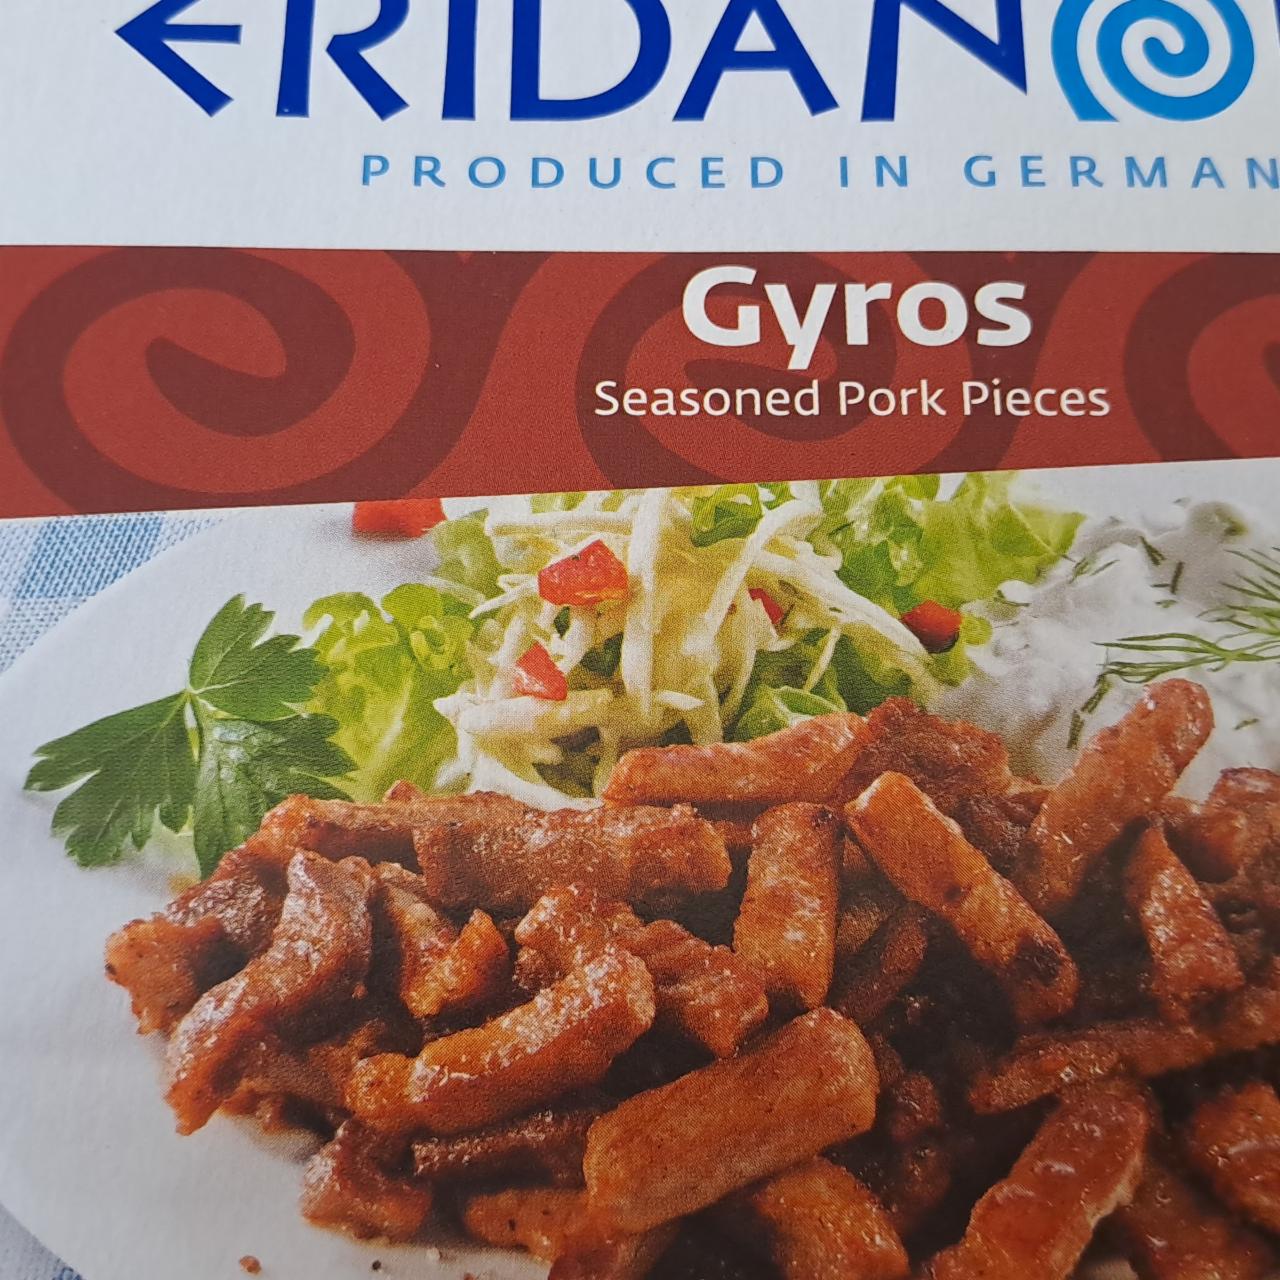 Фото - кусочки свинины со специями гирок Eridanous